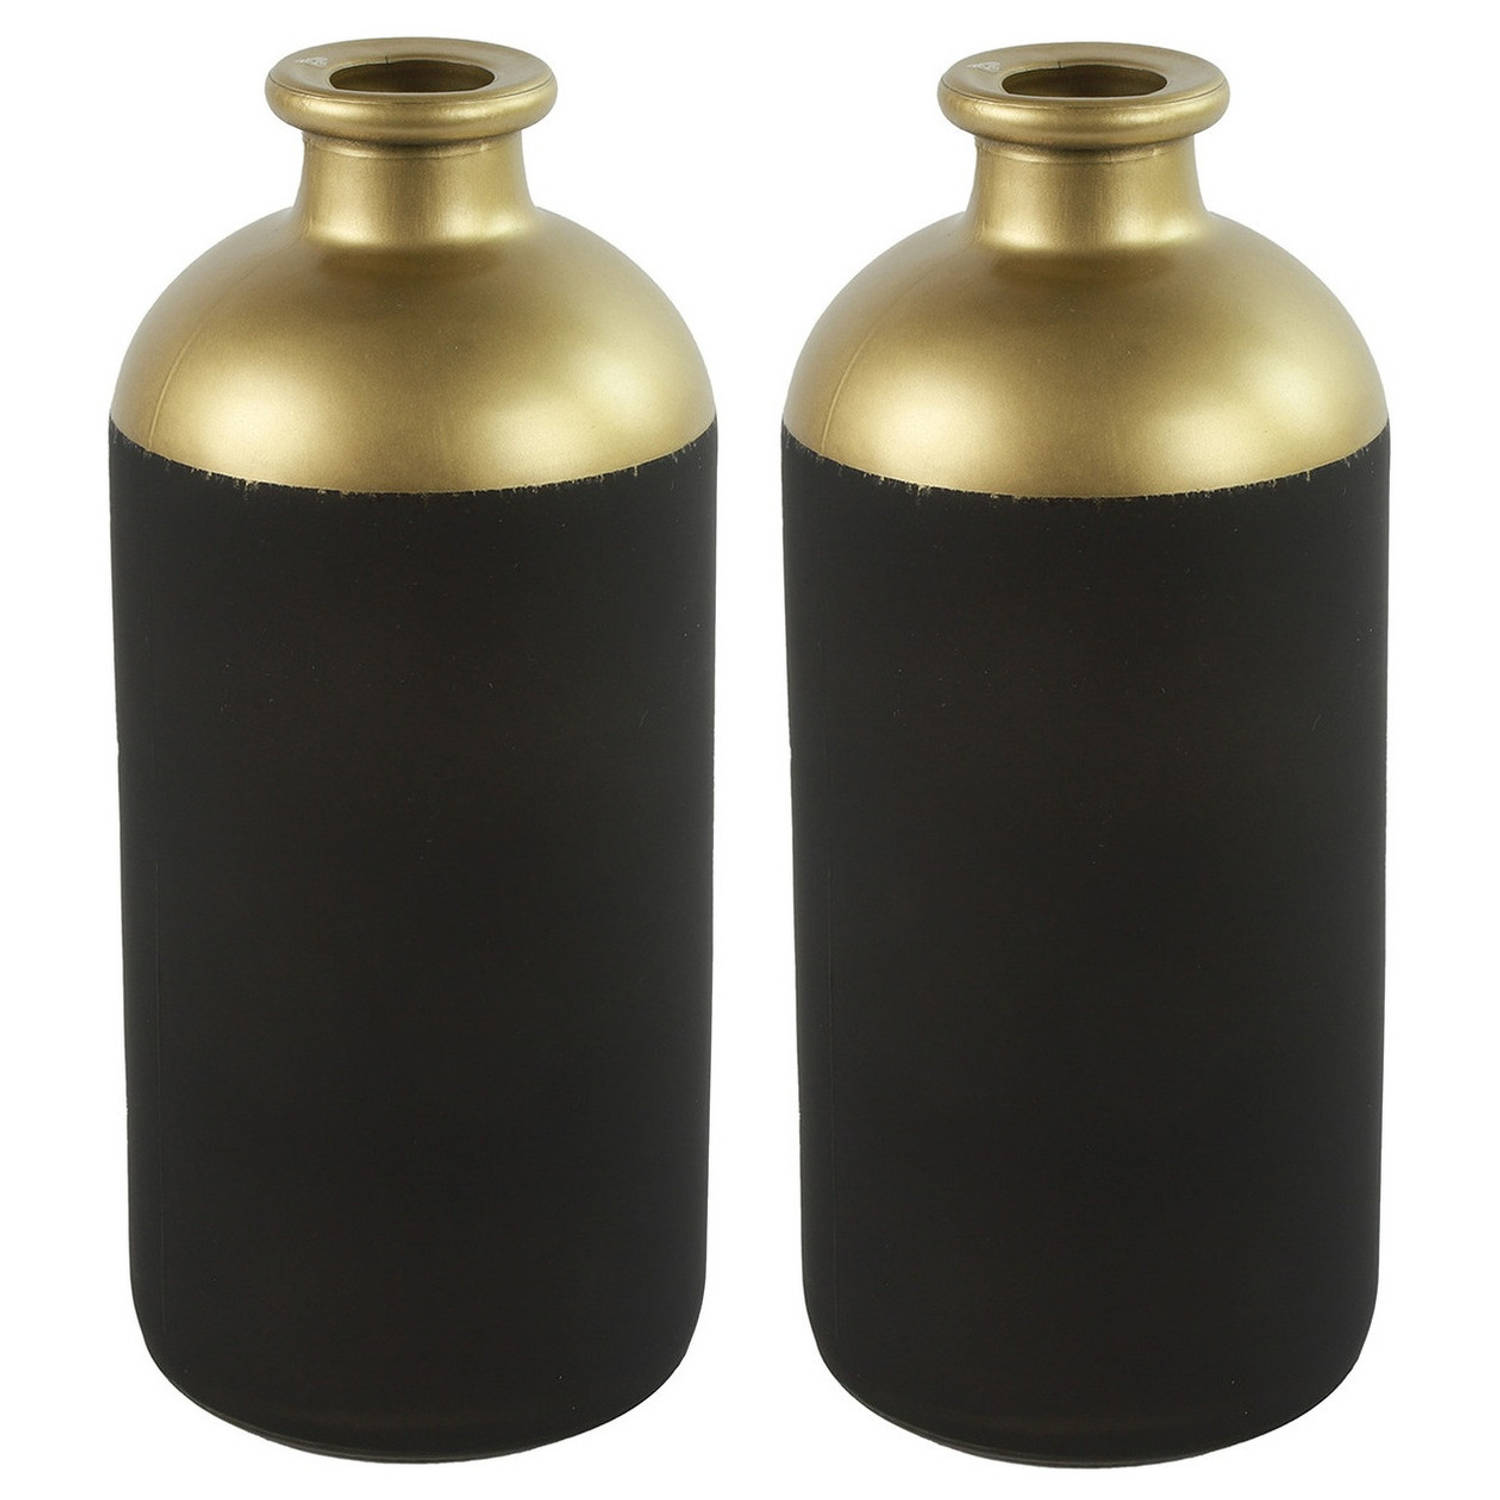 Countryfield Bloemen-deco Vaas 2x Zwart-goud Glas Luxe Fles Vorm D11 X H25 Cm Vazen